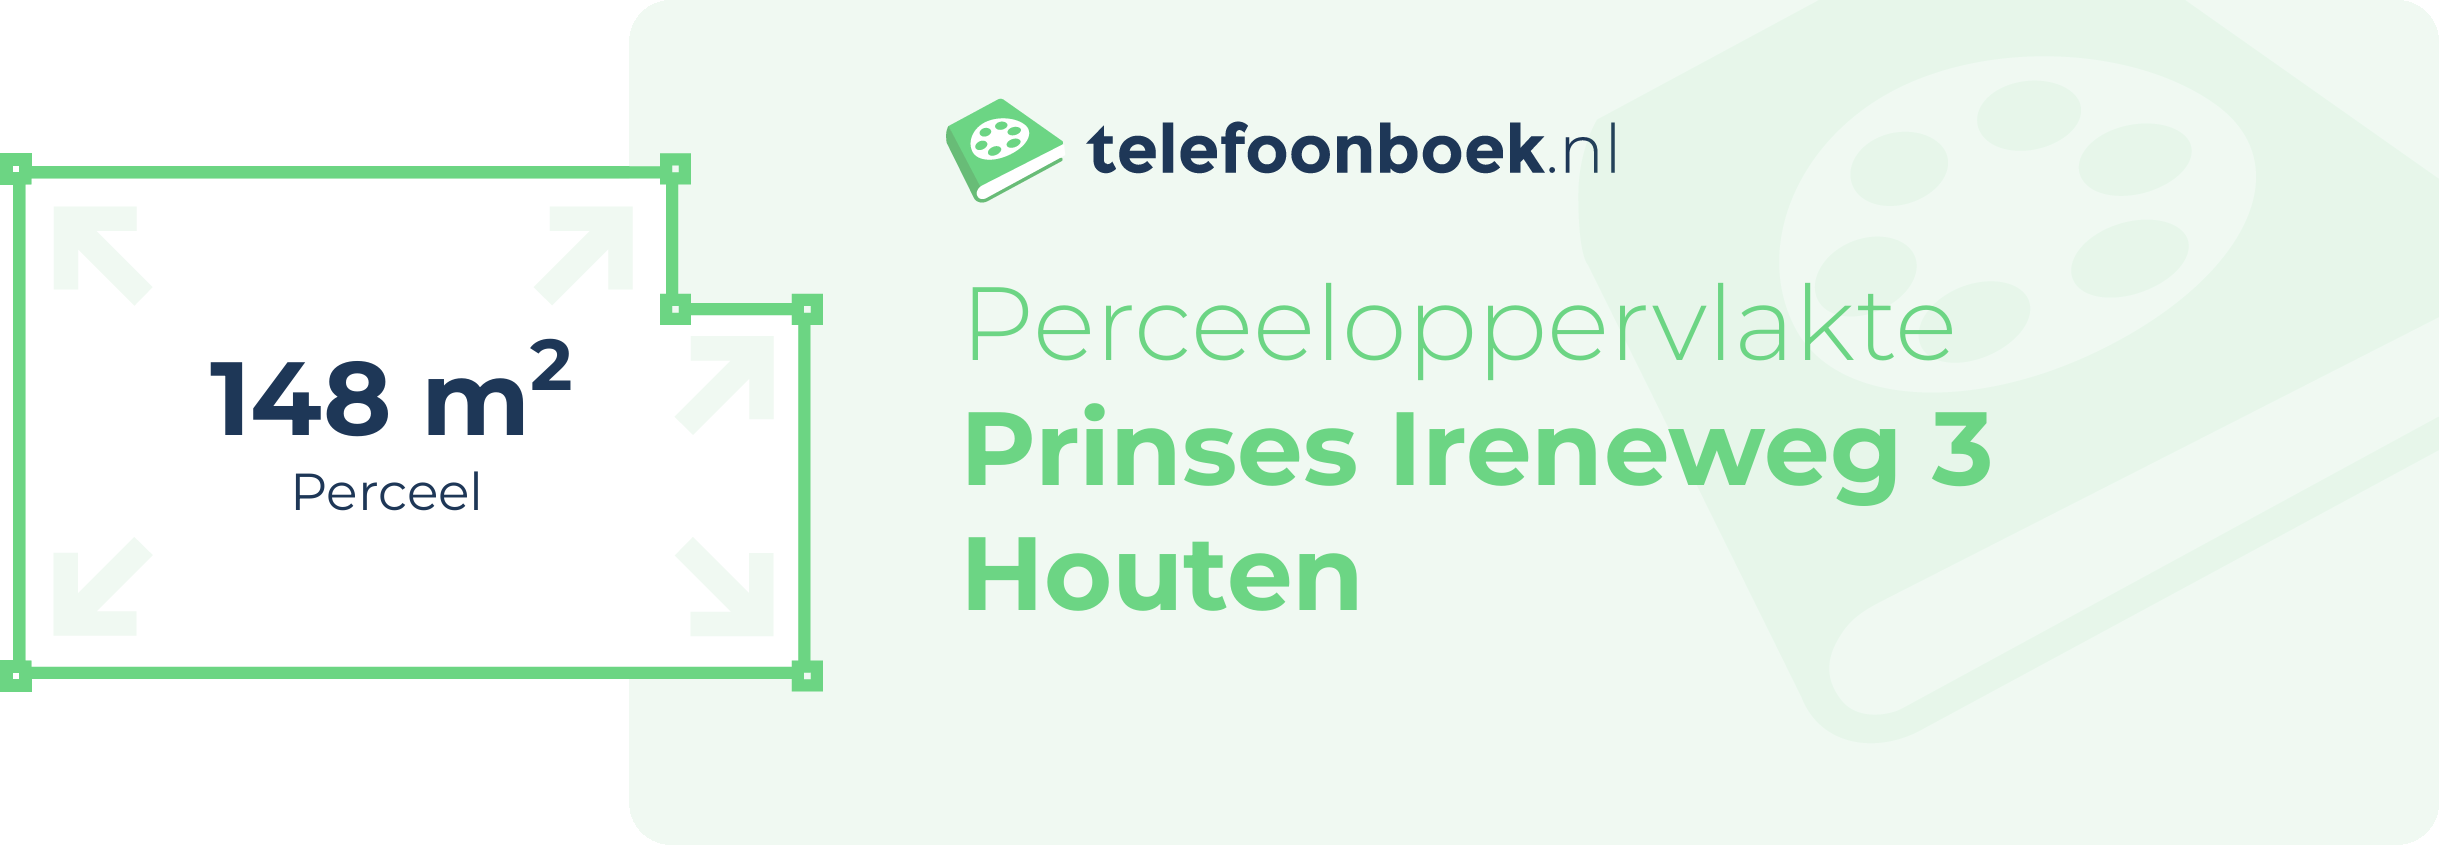 Perceeloppervlakte Prinses Ireneweg 3 Houten